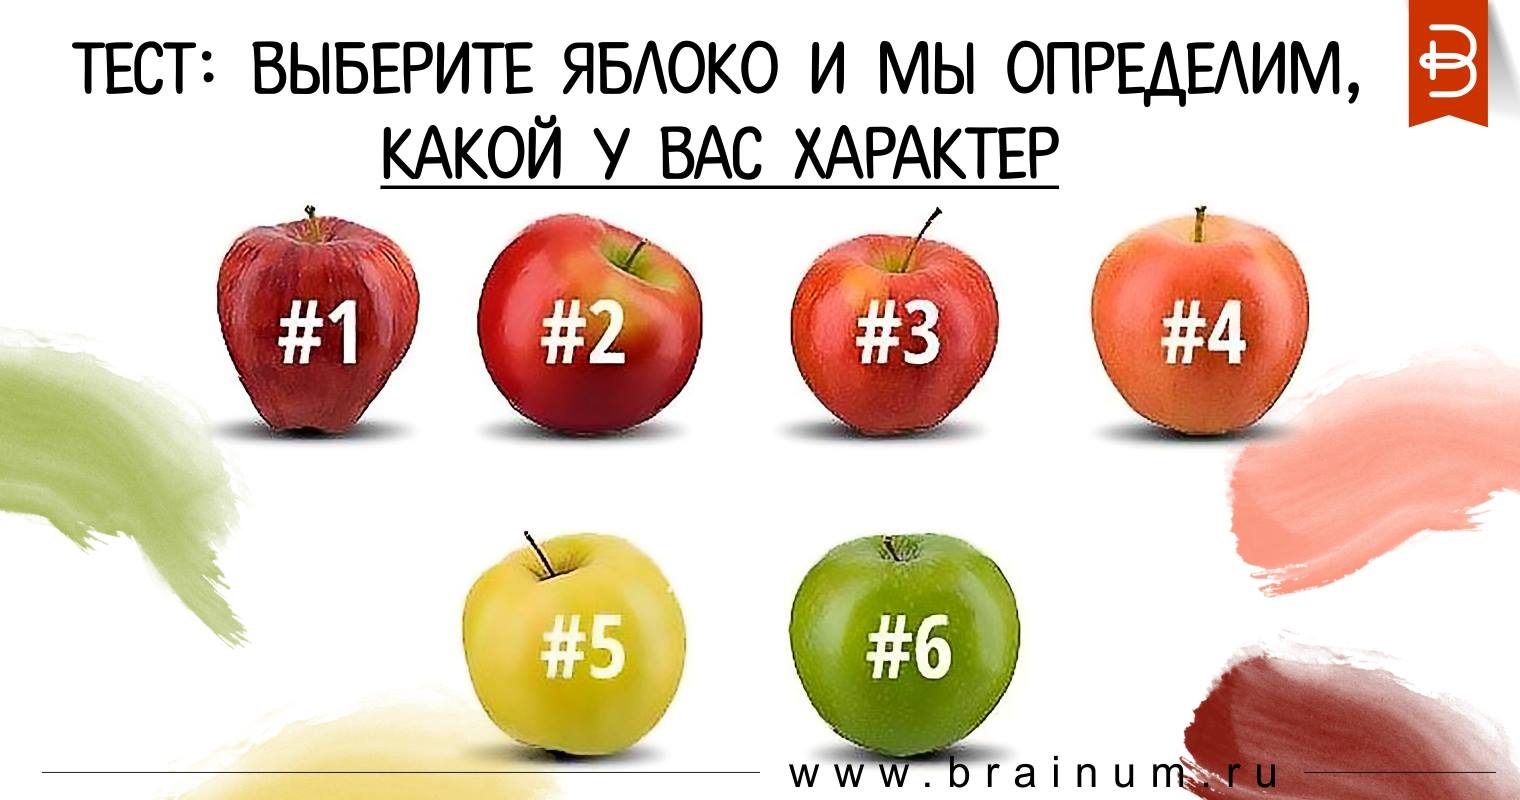 Есть 75 яблок выберите. Выберите яблоко. Тест выбрать яблоко. Тест какое яблоко выберешь. Какое яблоко ты выберешь.